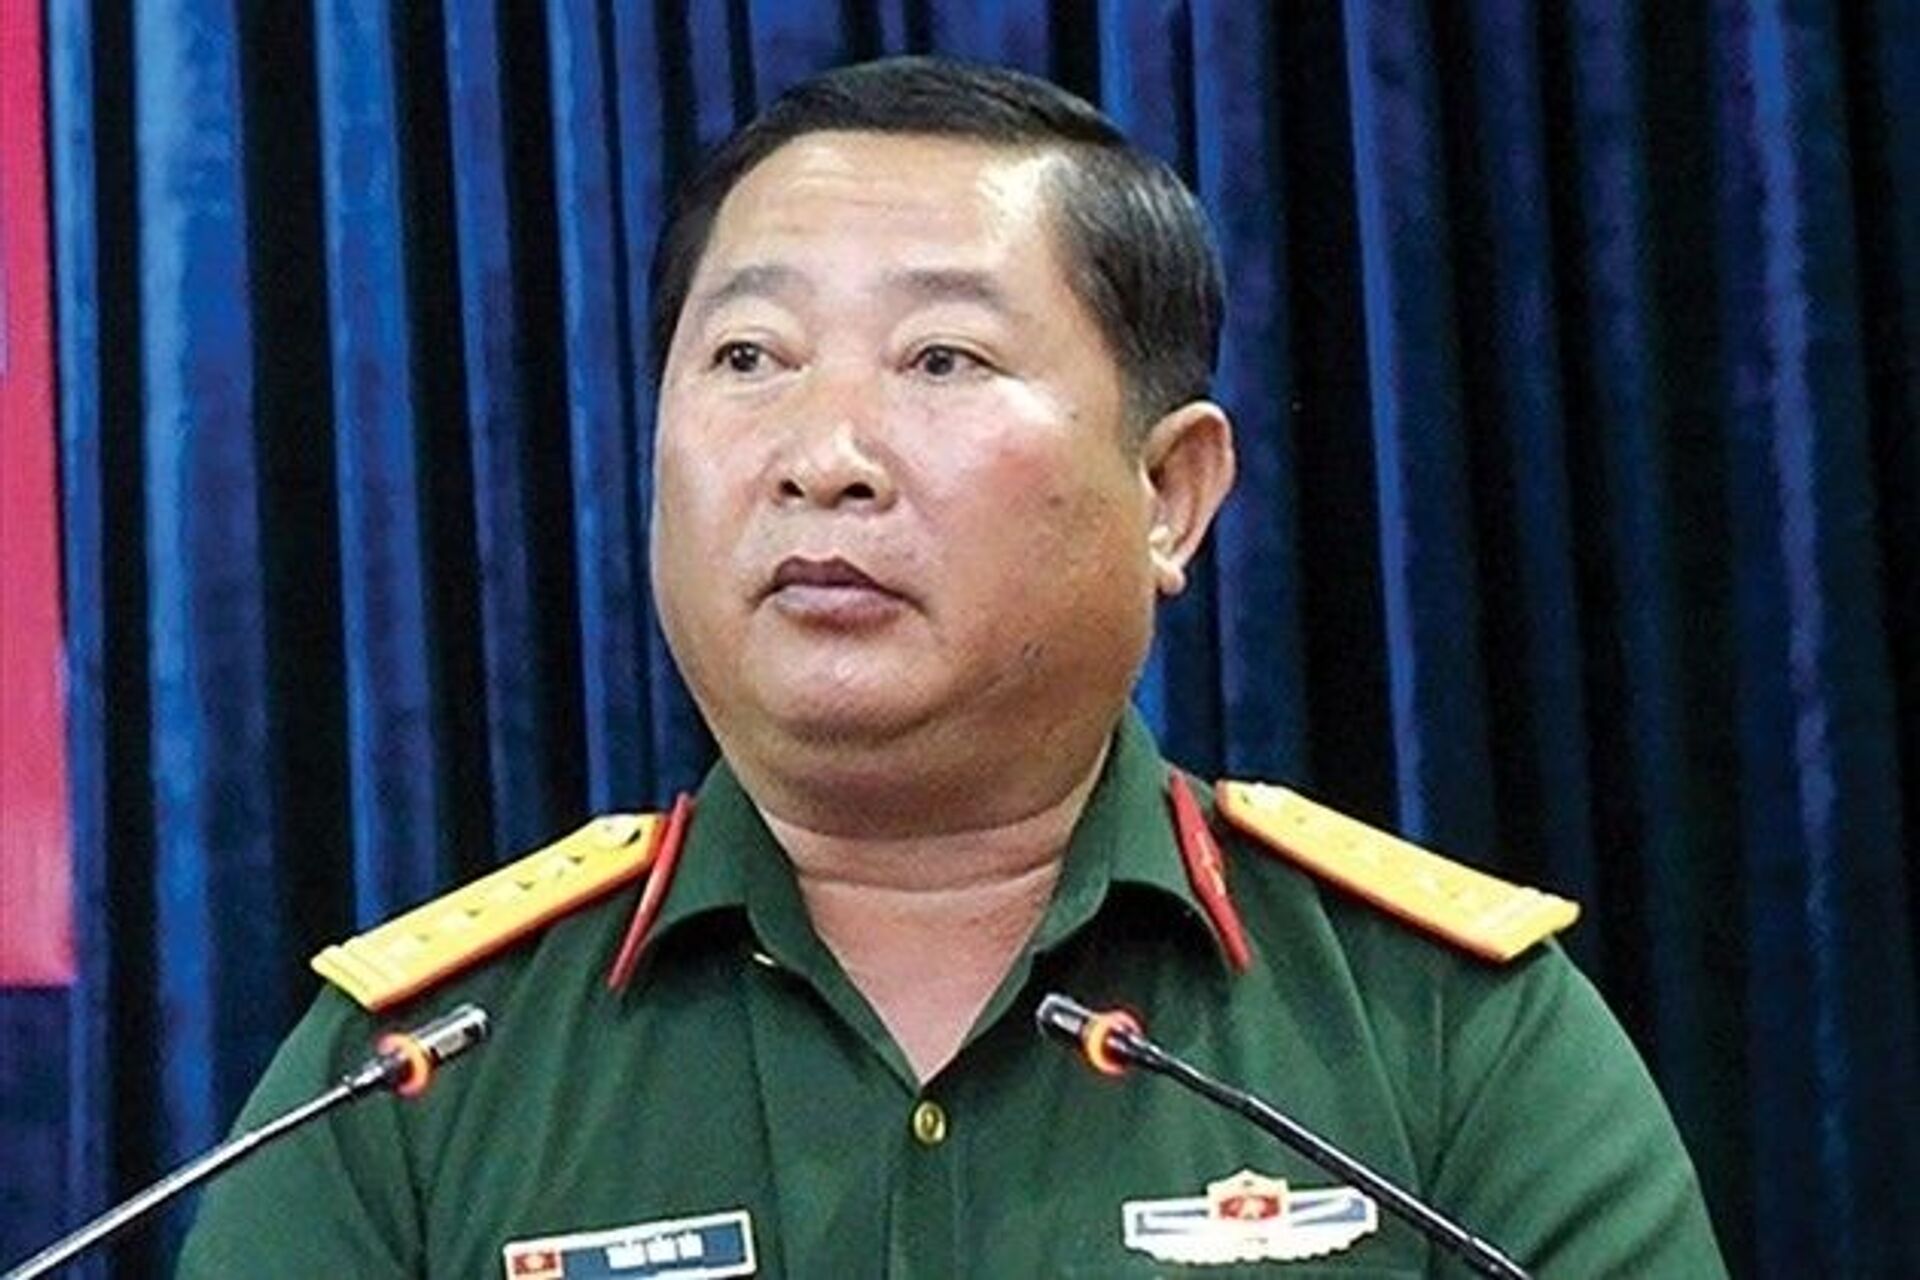 Việt Nam kỷ luật cán bộ: Tướng Trần Văn Tài bị cách hết tất cả chức vụ trong Đảng - Sputnik Việt Nam, 1920, 25.05.2021